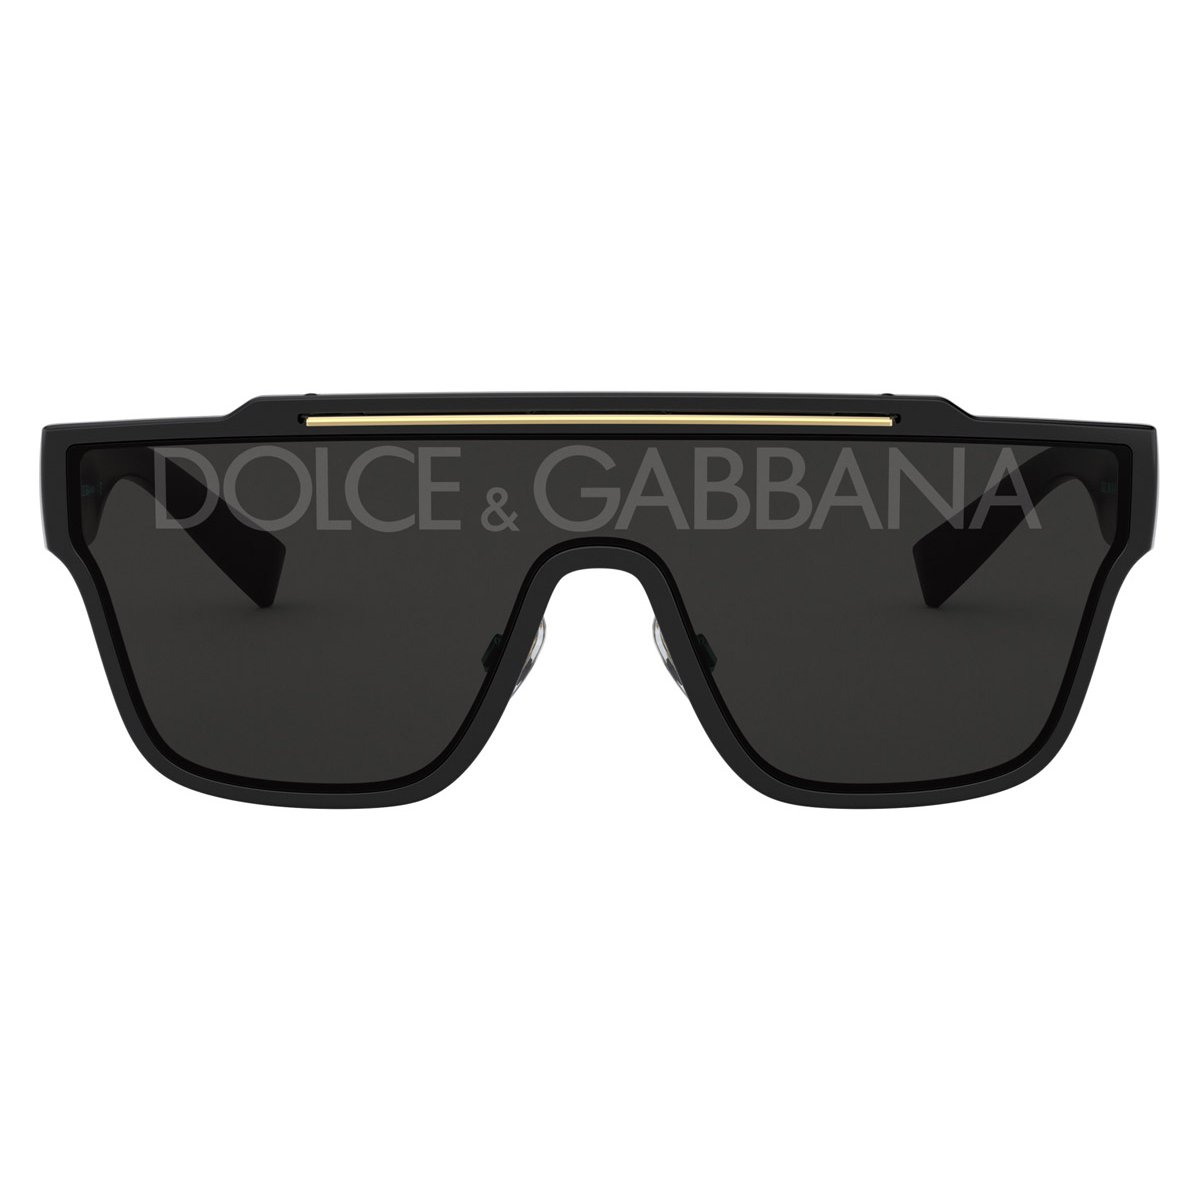 Солнцезащитные очки Dolce & Gabbana Viale Piave 20, черный коричневые солнцезащитные очки унисекс прямоугольной формы с полными линзами d franklin d franklin коричневый